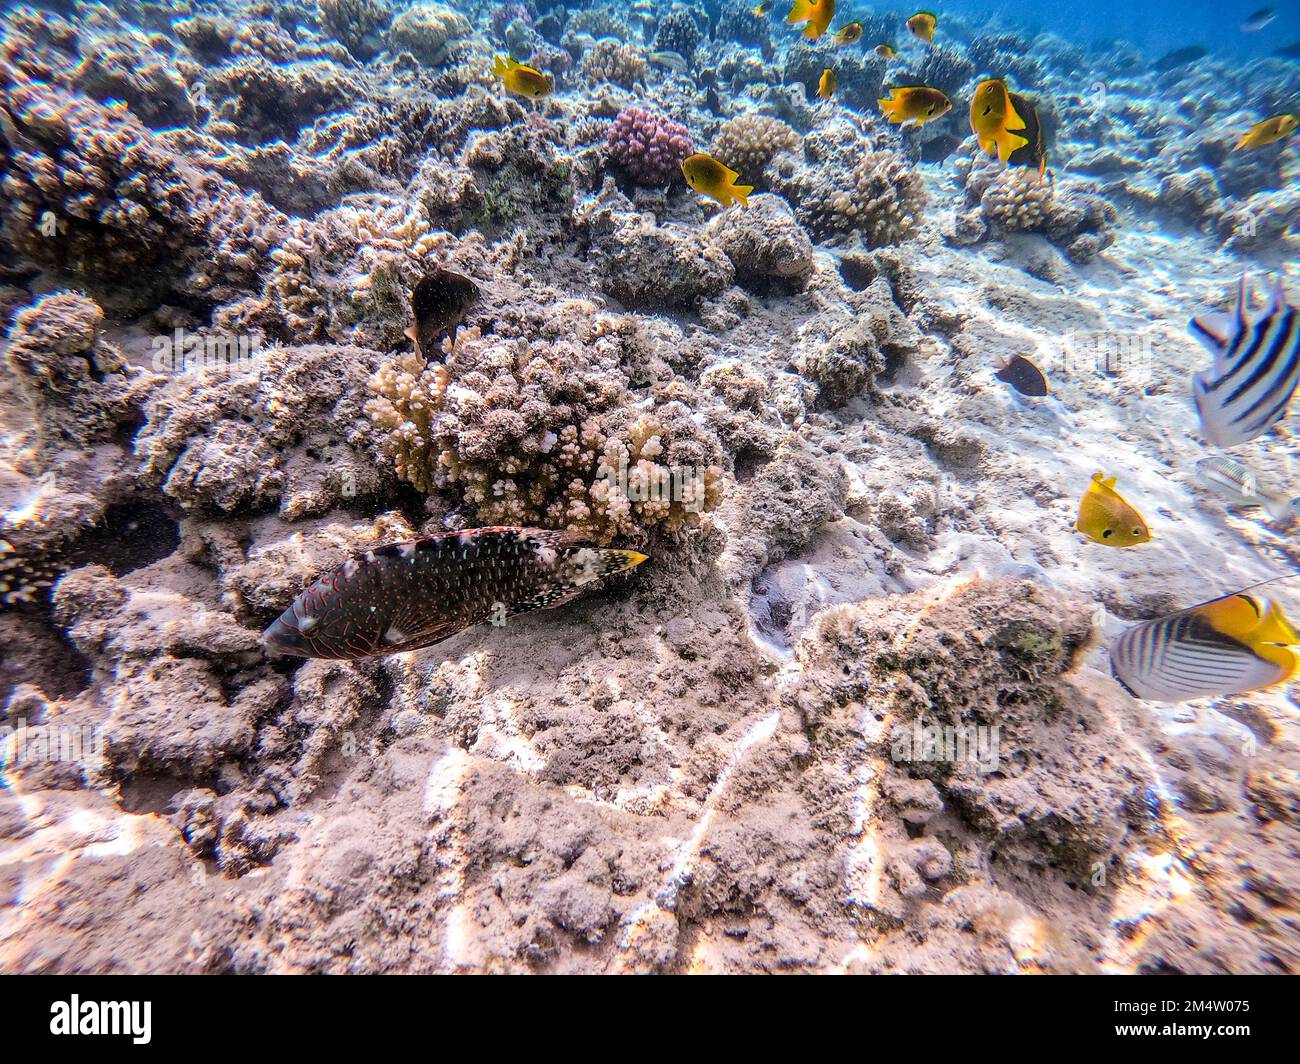 Tropischer Abudjubbe-Lippfisch, bekannt als Cheilinus abudjubbe unter Wasser am Korallenriff. Unterwasserleben von Riff mit Korallen und tropischen Fischen. Coral Re Stockfoto